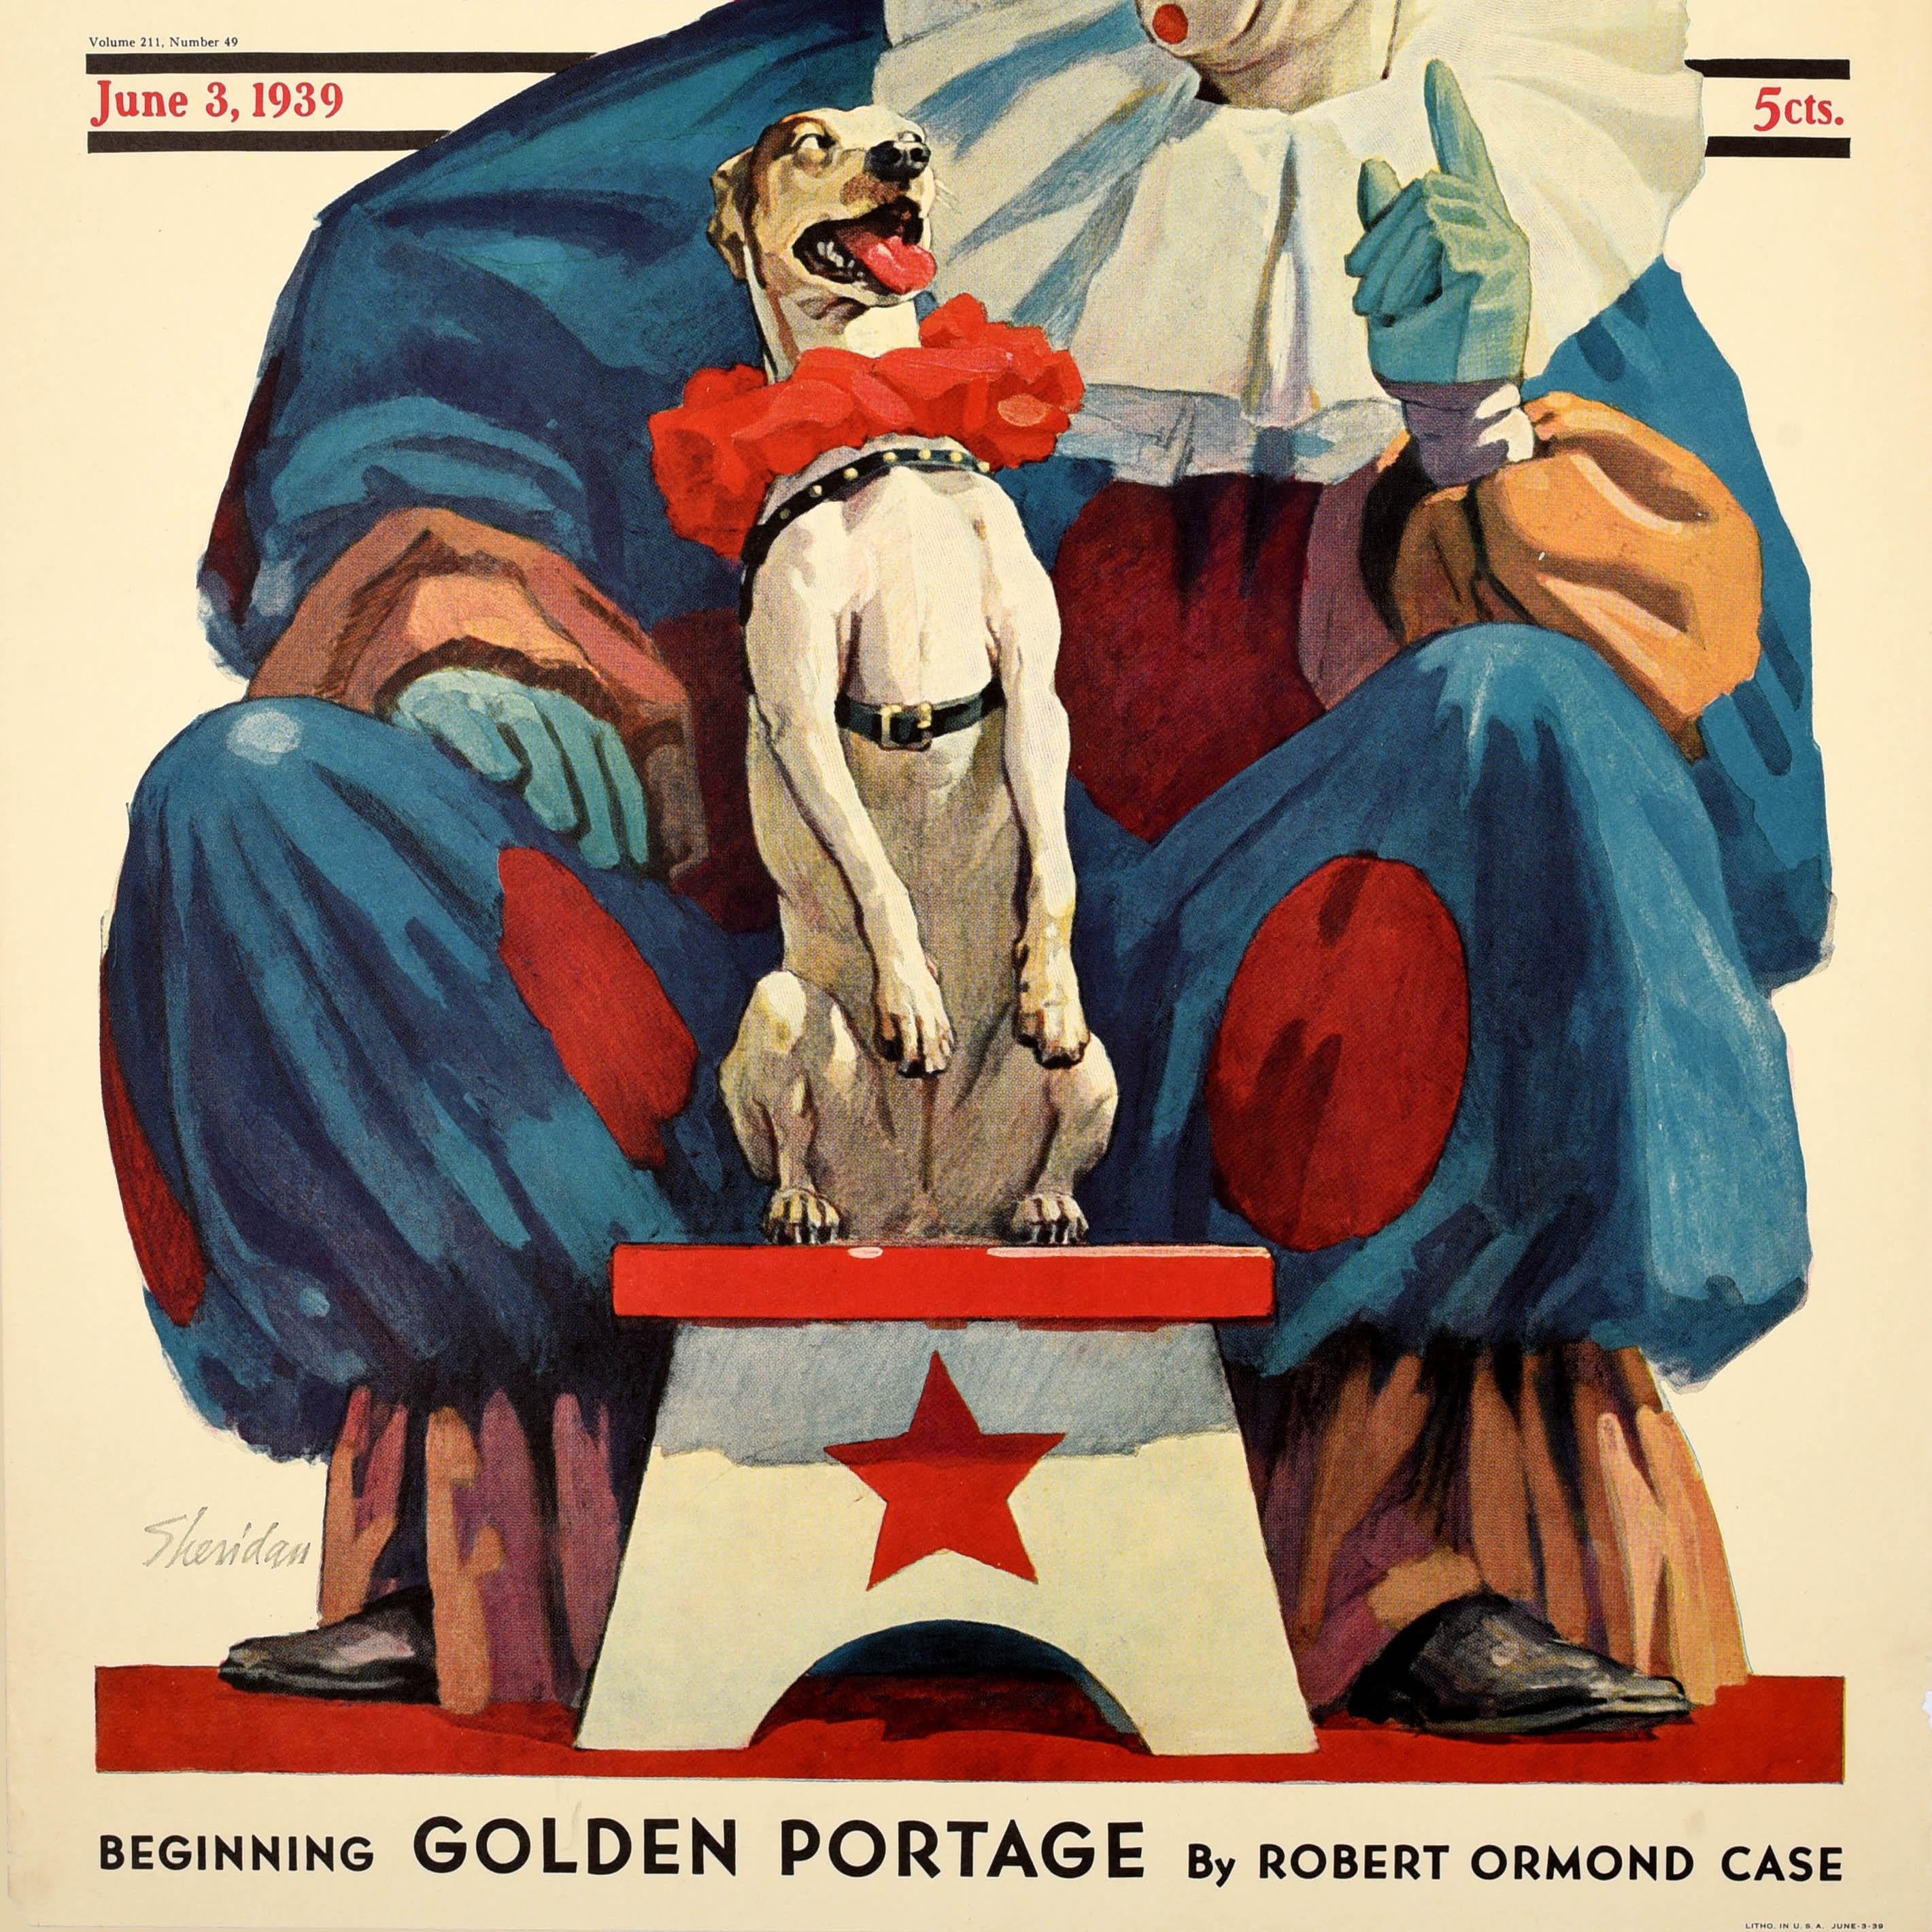 Original-Werbeplakat für die Ausgabe vom 3. Juni 1939 des illustrierten Magazins The Saturday Evening Post. Es zeigt einen Clown in einem blau-roten Polka-Dot-Outfit, der einem Hund auf einem weiß-roten Sternhocker Kunststücke beibringt, oben den